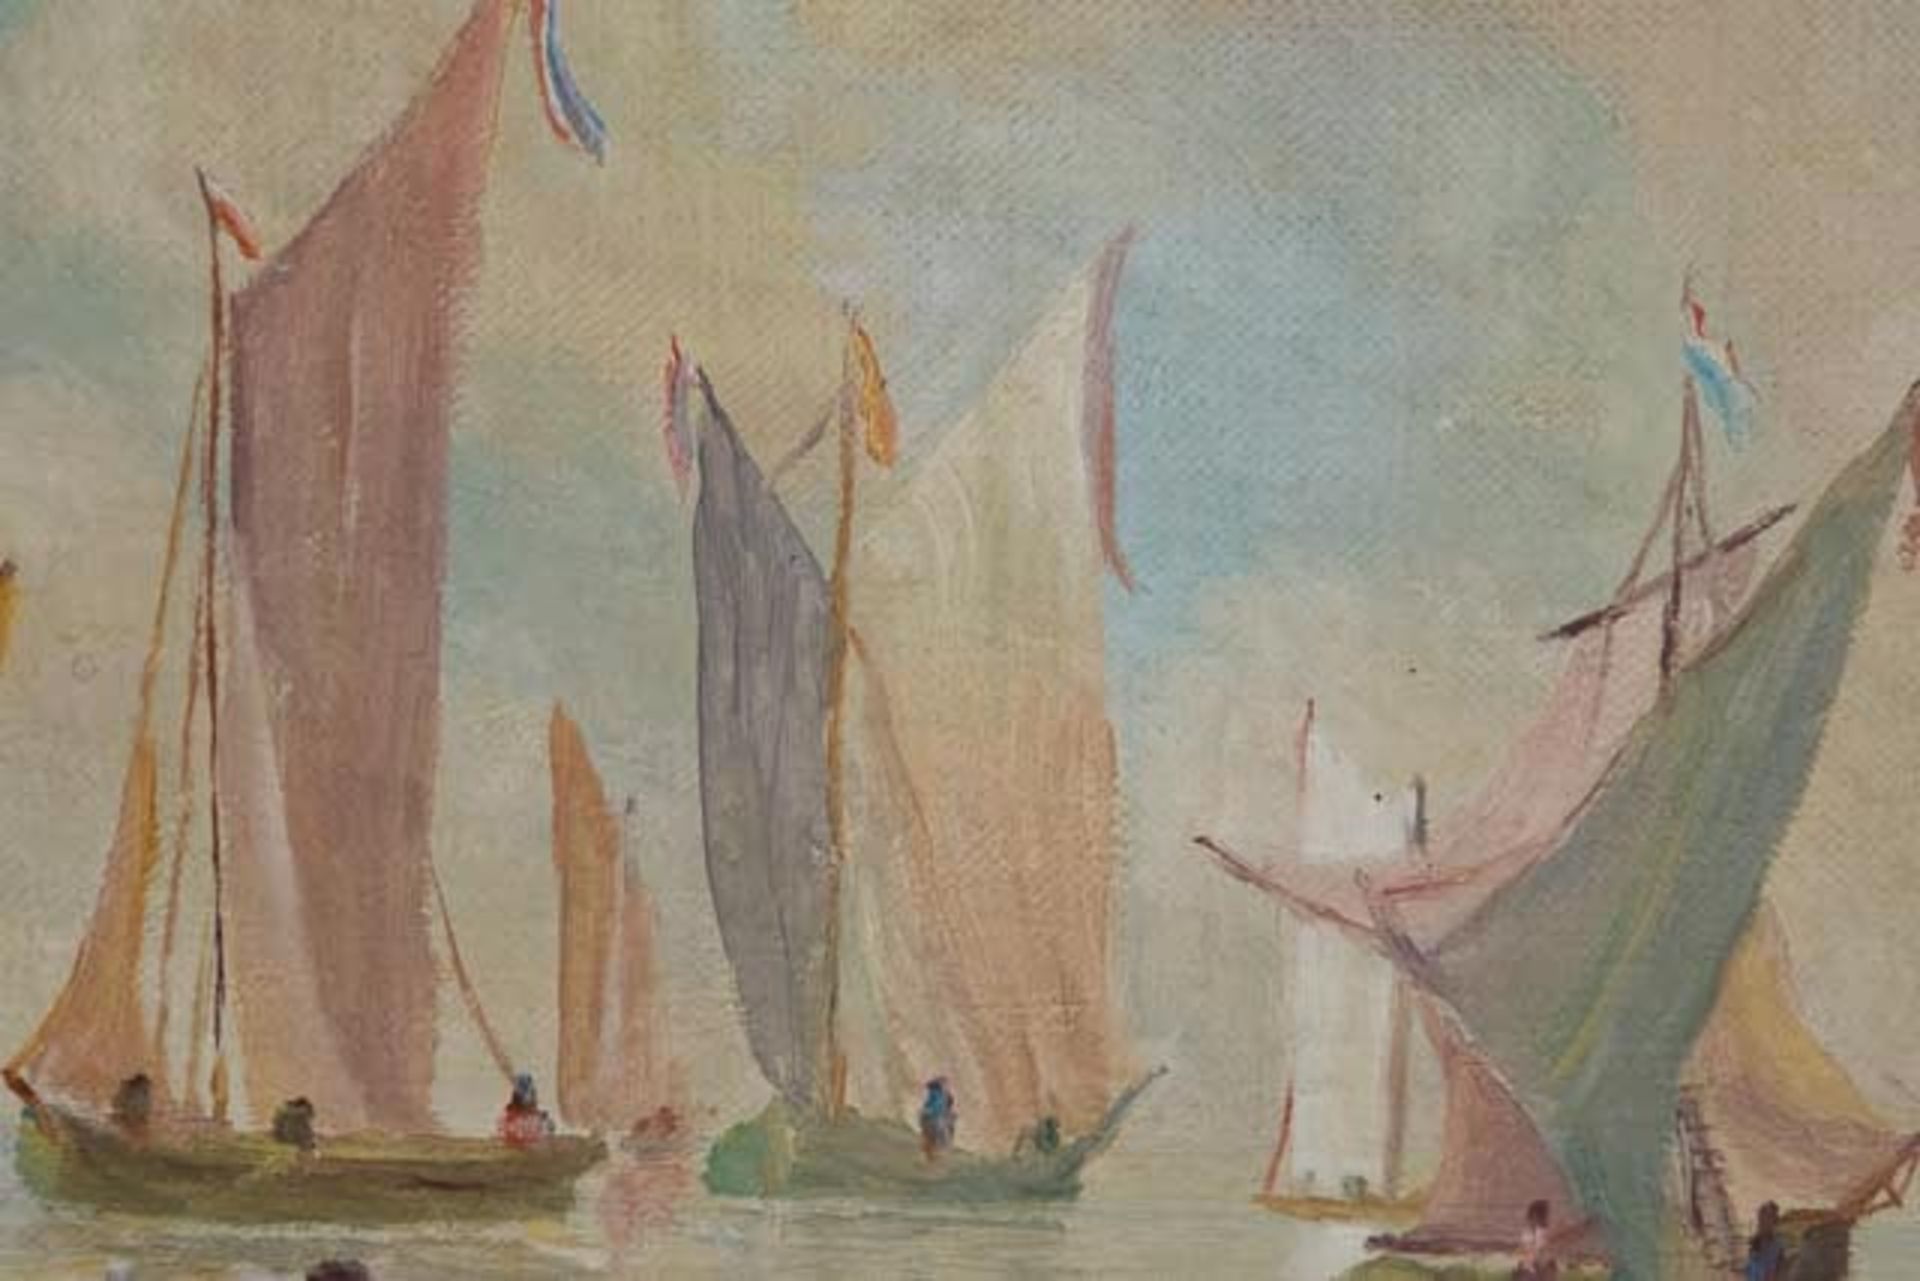 Gemälde "Schiffe auf dem Meer" - Bild 6 aus 9